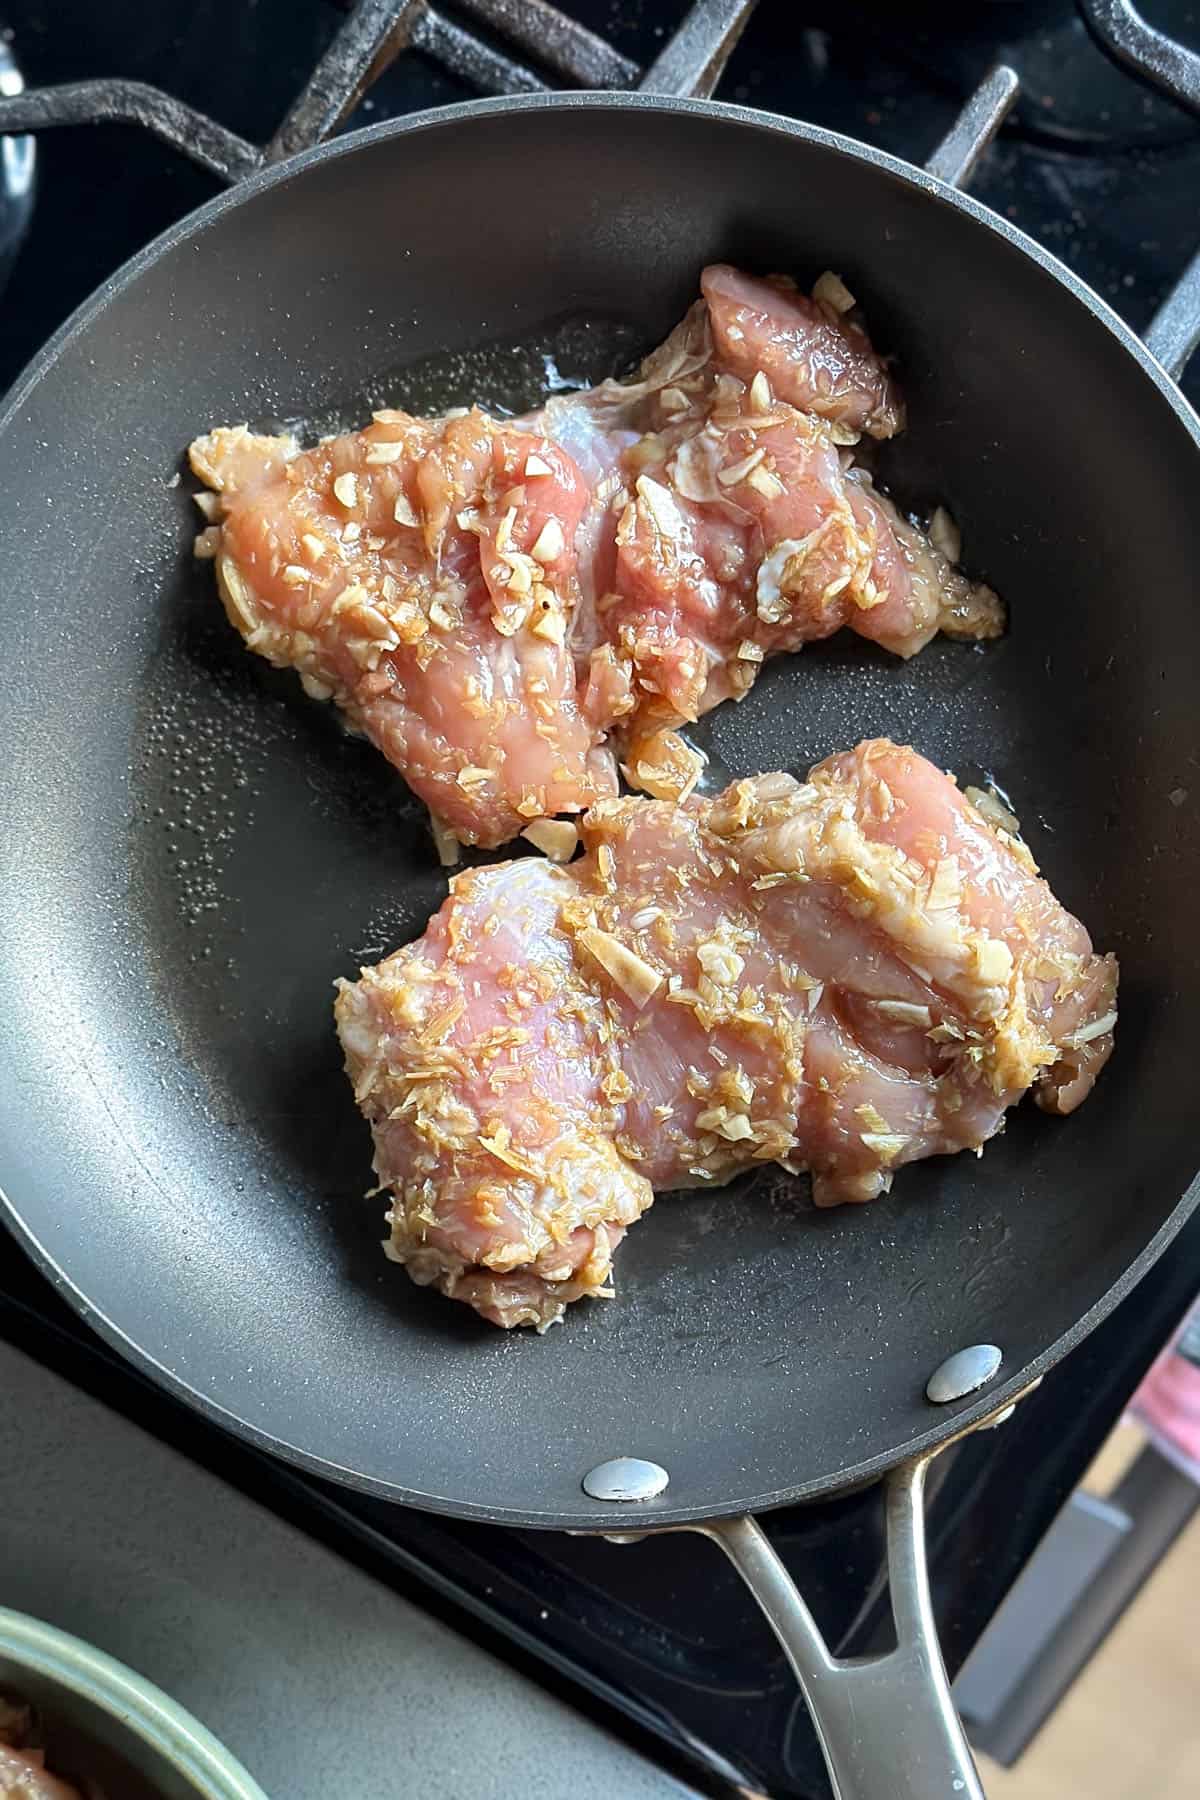 Pan frying lemongrass chicken.